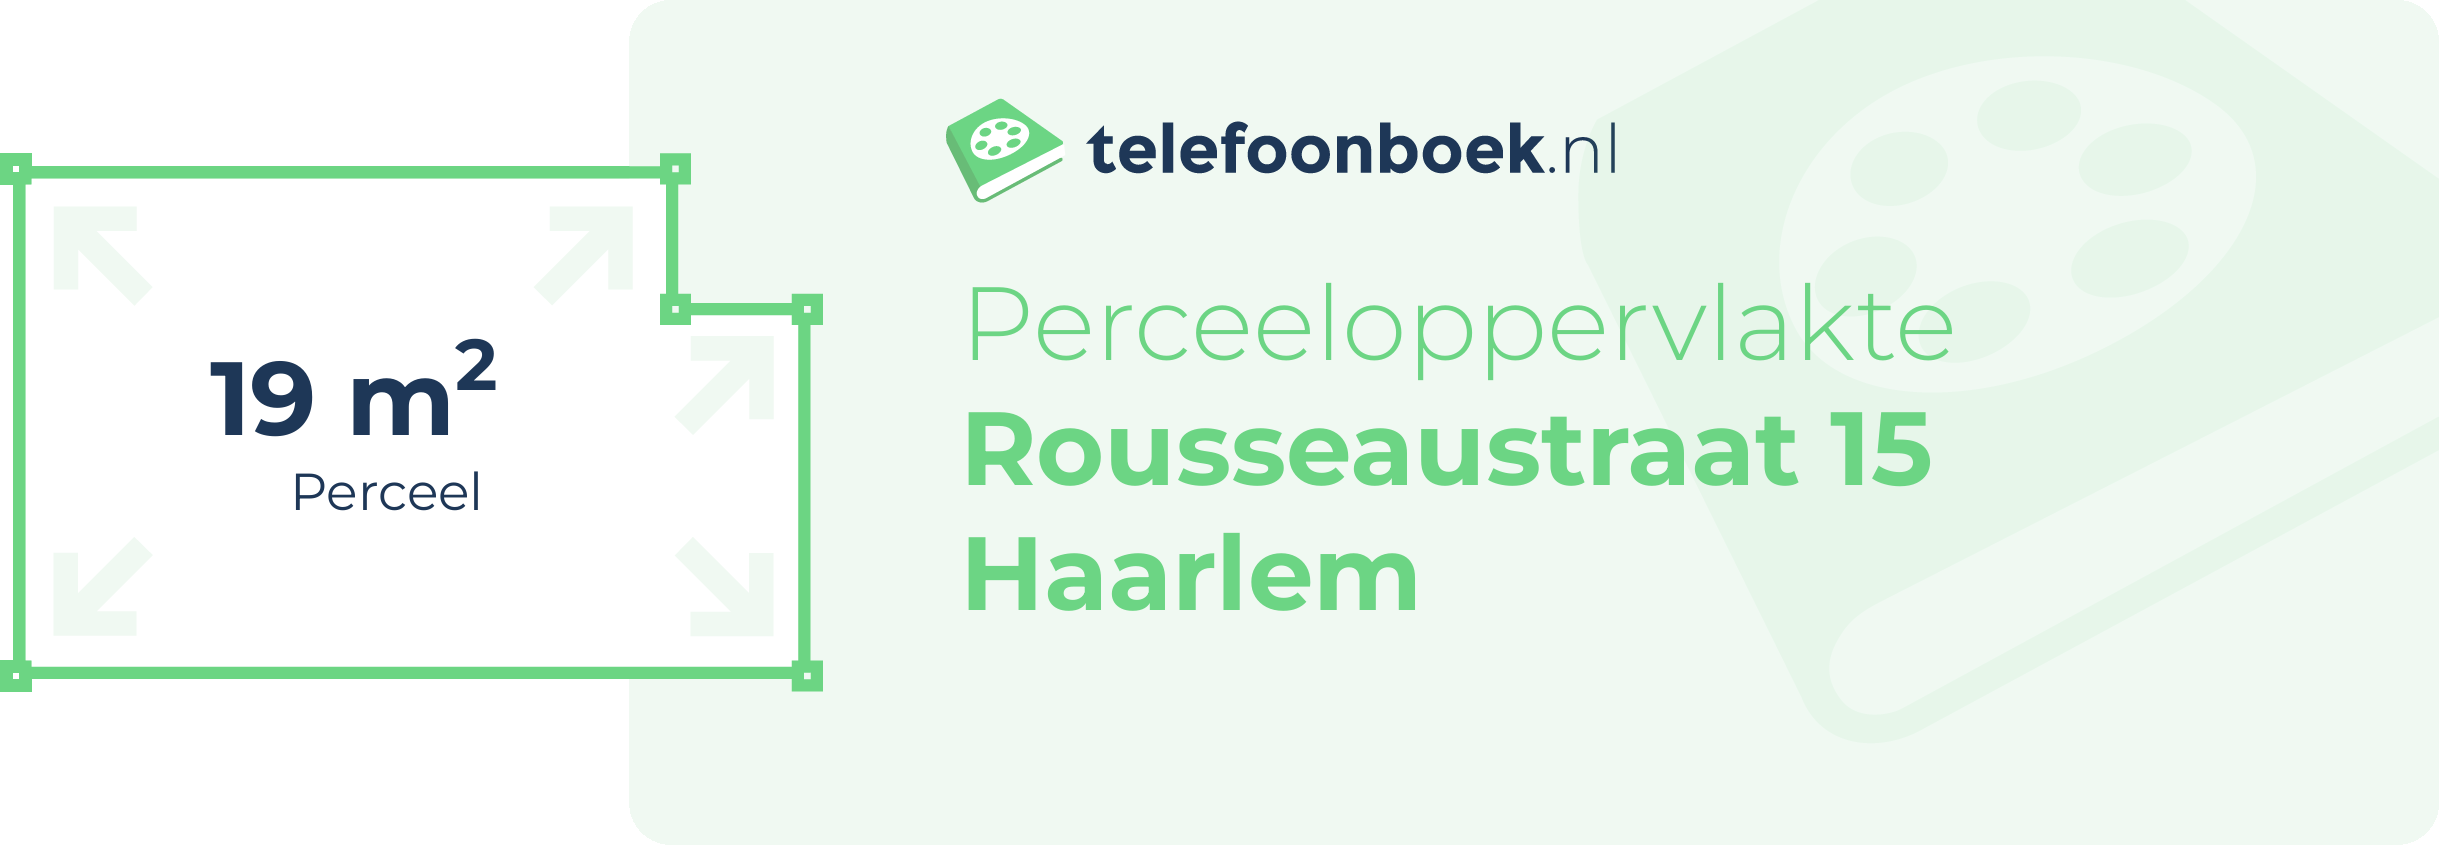 Perceeloppervlakte Rousseaustraat 15 Haarlem